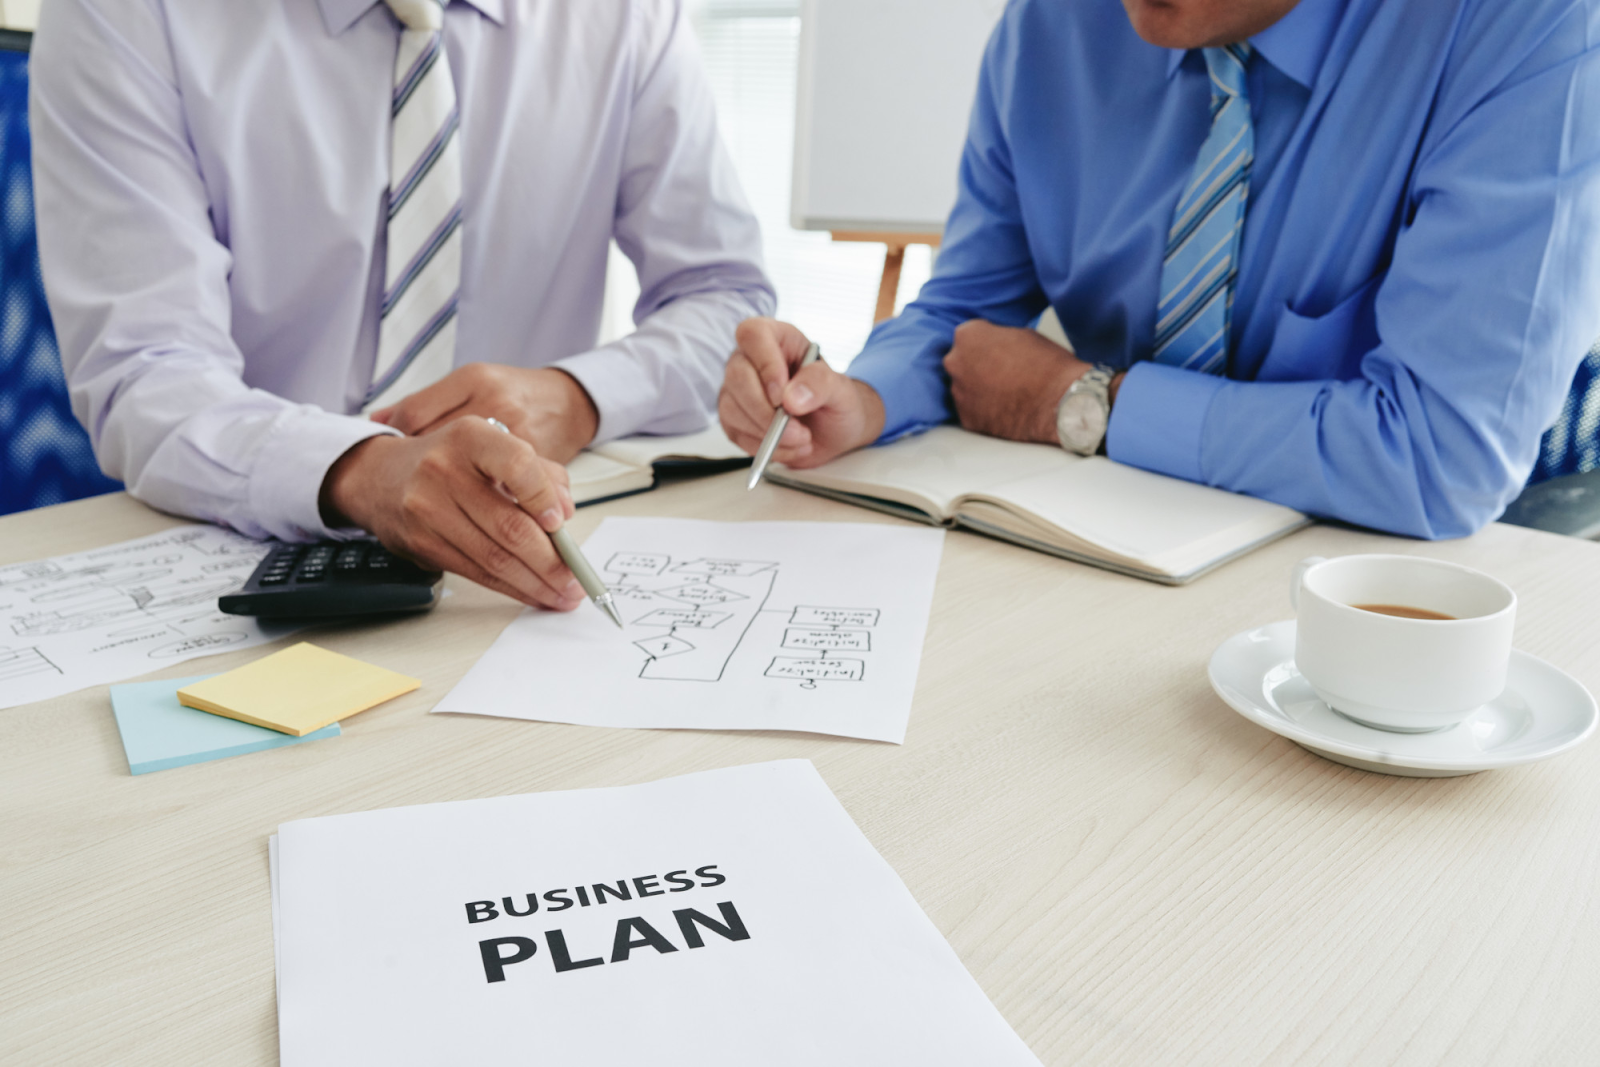 Membuat rencana bisnis juga harus dilakukan supaya nantinya dapat memulai bisnis sesuai dengan rencana yang sudah ditentukan